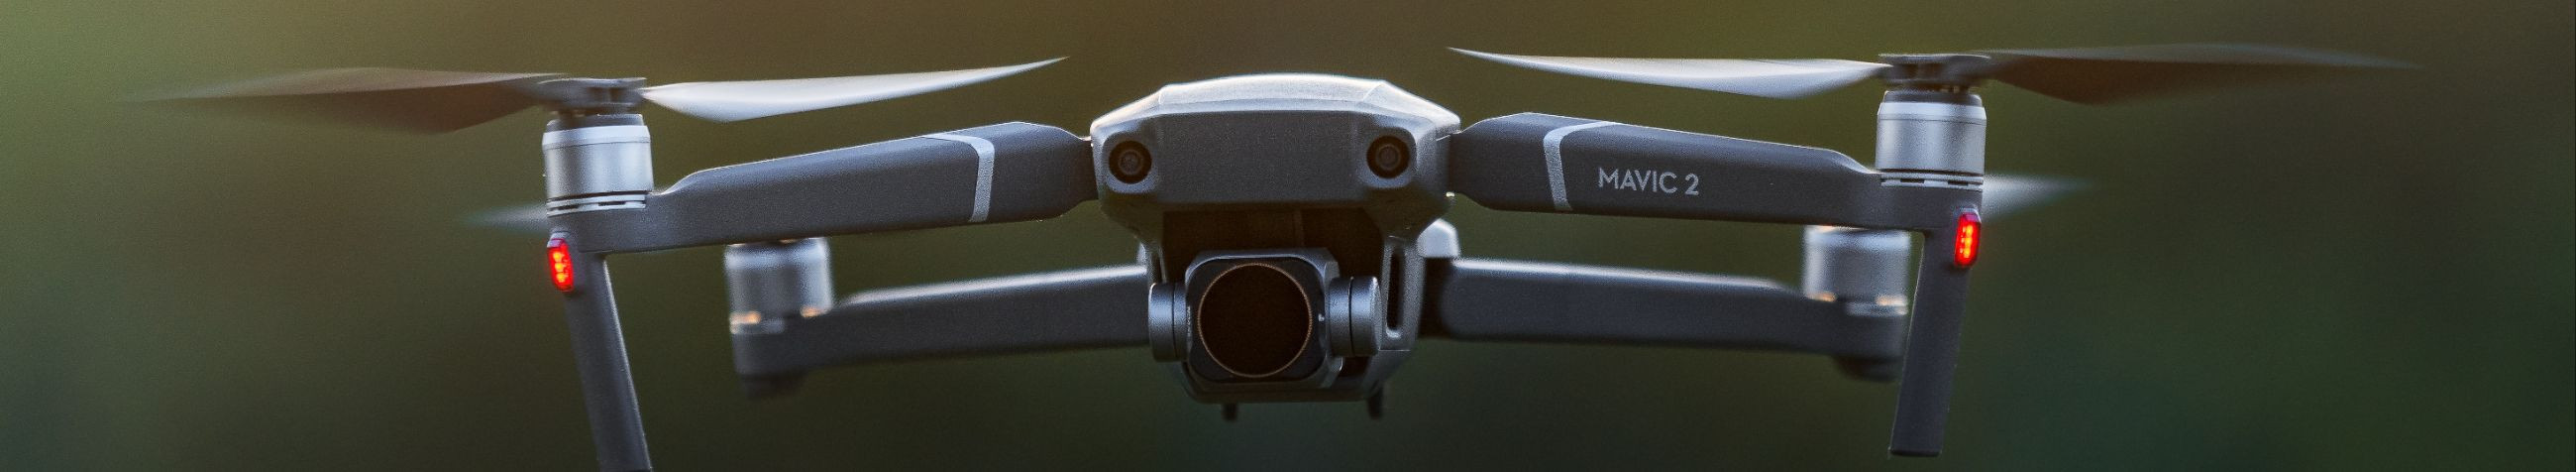 Tegeleme droonide rentimise, remondi, filmimise ja lennutamise koolitusega seotud teenuste pakkumisega, pakkudes klientidele kvaliteetseid lahendusi igasugusteks droonivajadusteks.